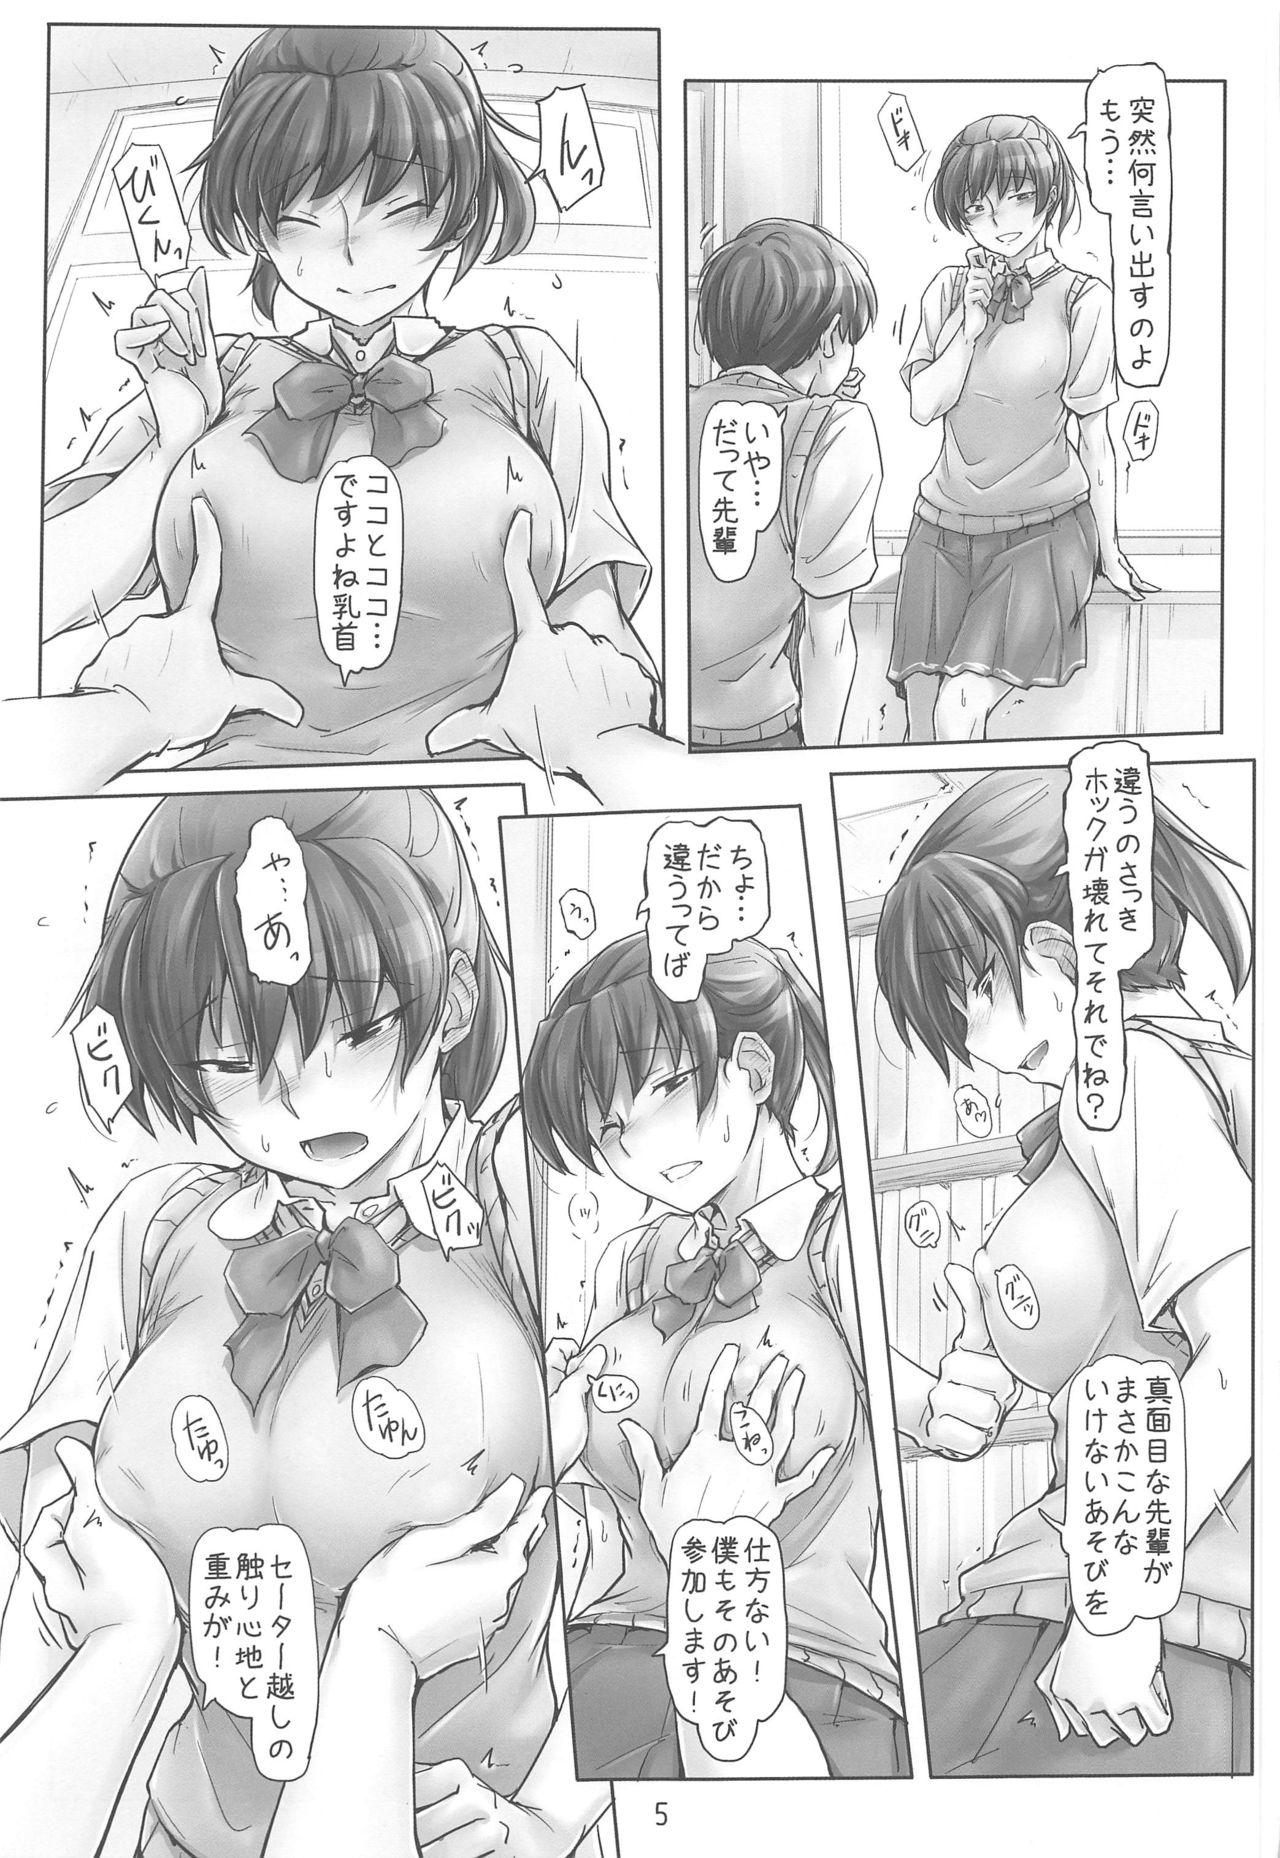 Vagina Shinpai Shita Kare ga Ie made Okutte Kurete Ureshikatta kara Date de Chotto Daitan na Hibiki-san - Amagami Lips - Page 4